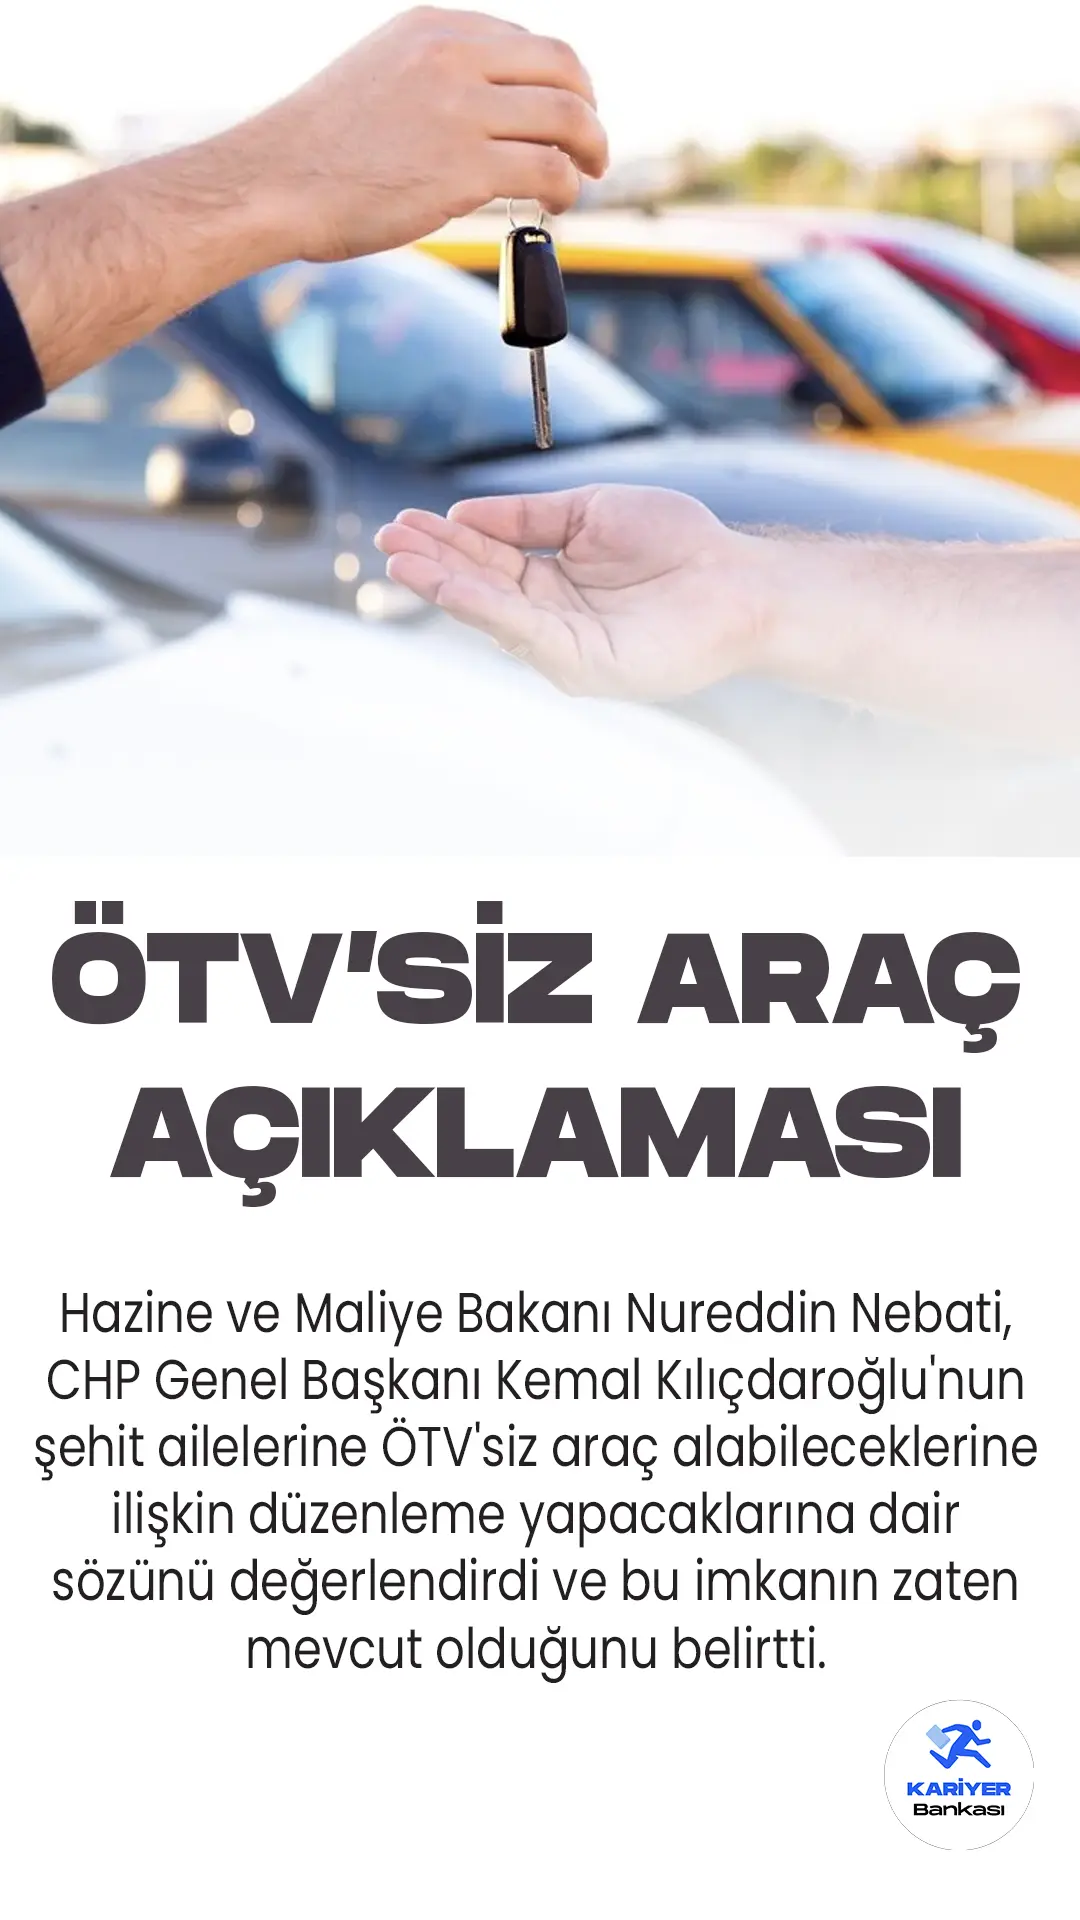 Hazine ve Maliye Bakanı Nureddin Nebati, CHP Genel Başkanı Kemal Kılıçdaroğlu'nun ÖTV'siz araç sözüne yanıt geldi.